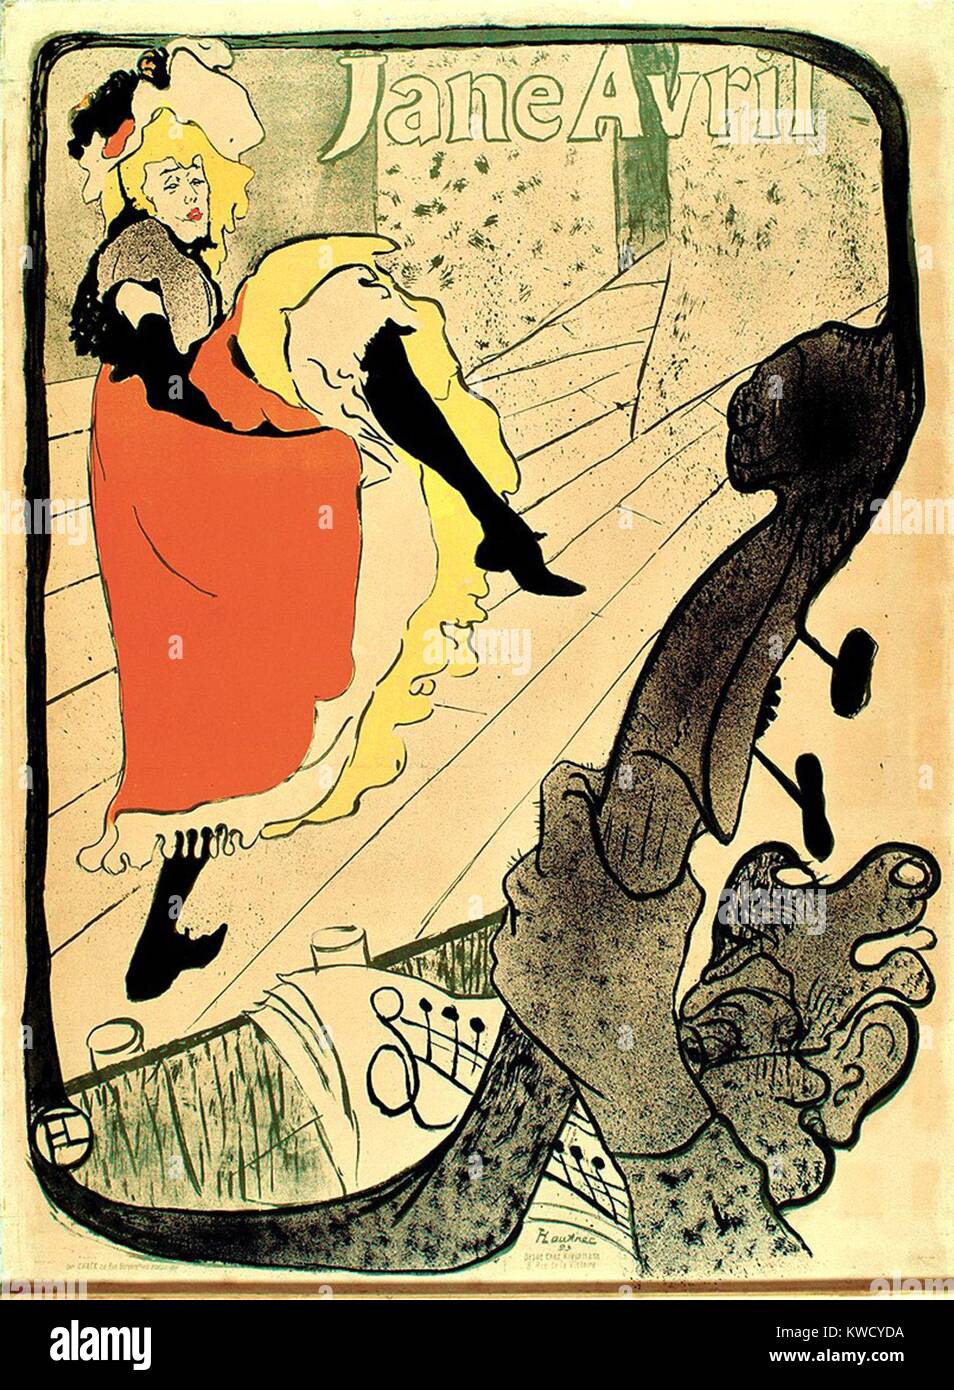 Jane Avril, par Henri de Toulouse-Lautrec, 1893, lithographie, impression postimpressionniste français. Avril, ami de l'artiste, a commandé ce print pour annoncer son spectacle du Jardin de Paris (BSLOC 2017 5 65) Banque D'Images